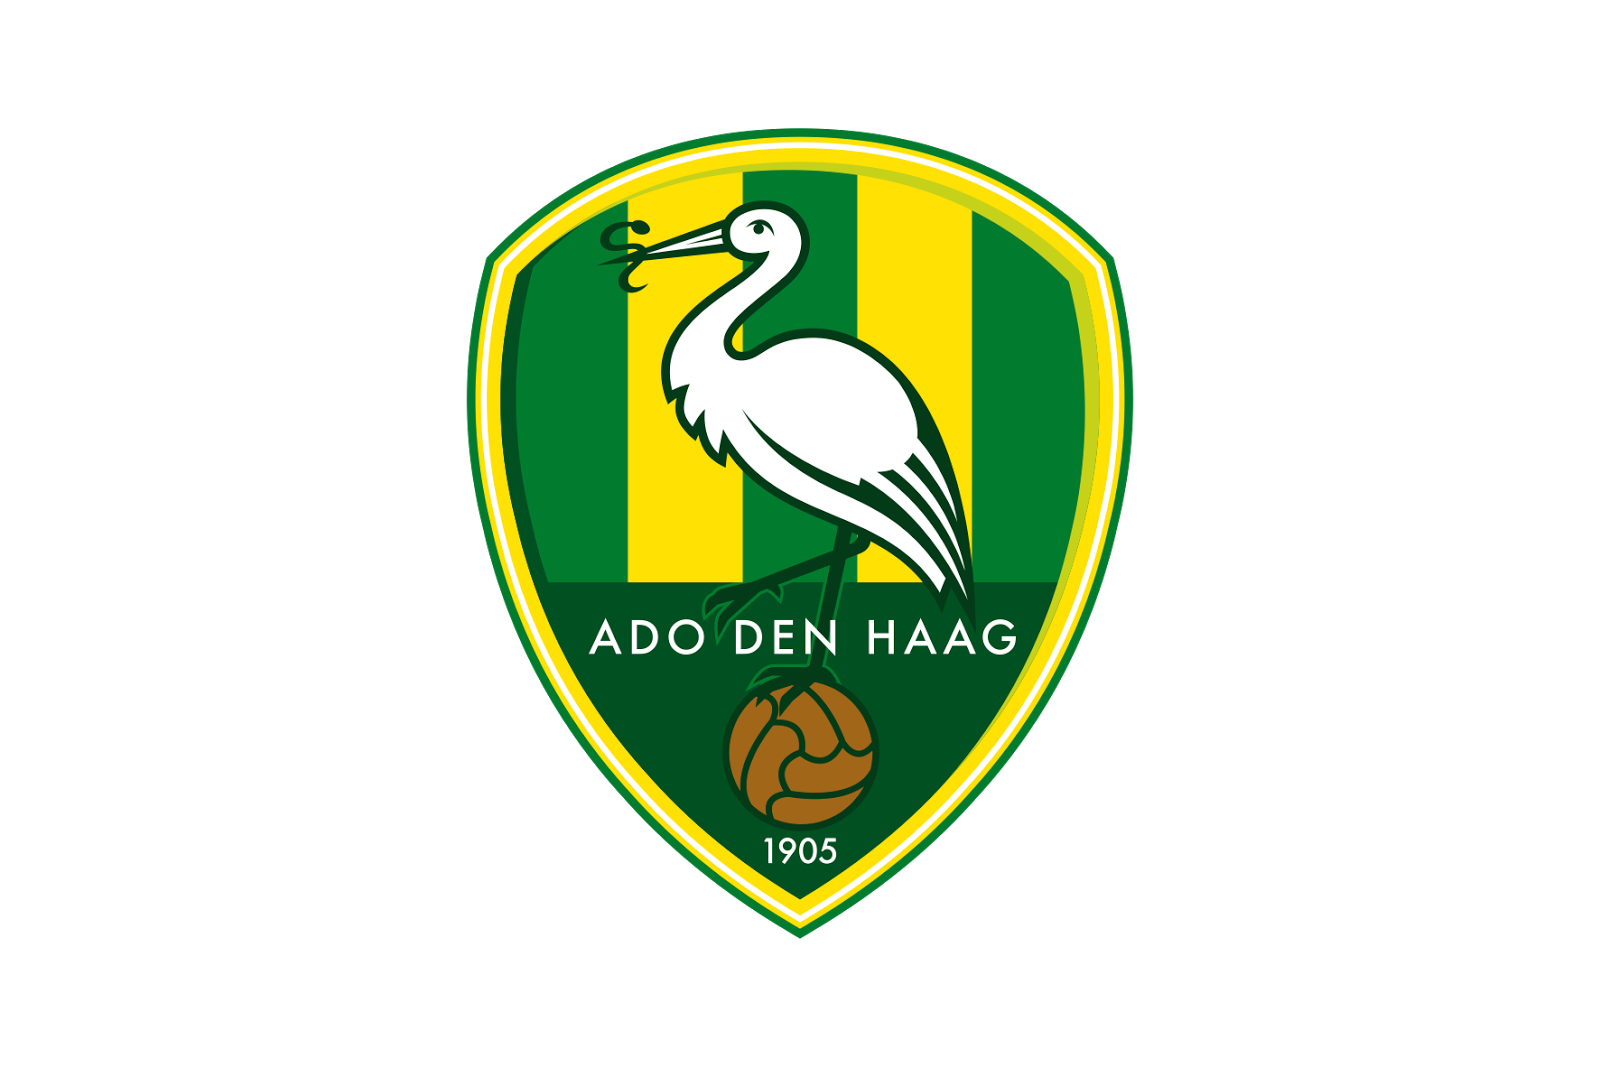 Ado Den Haag Logo PNG - 39014